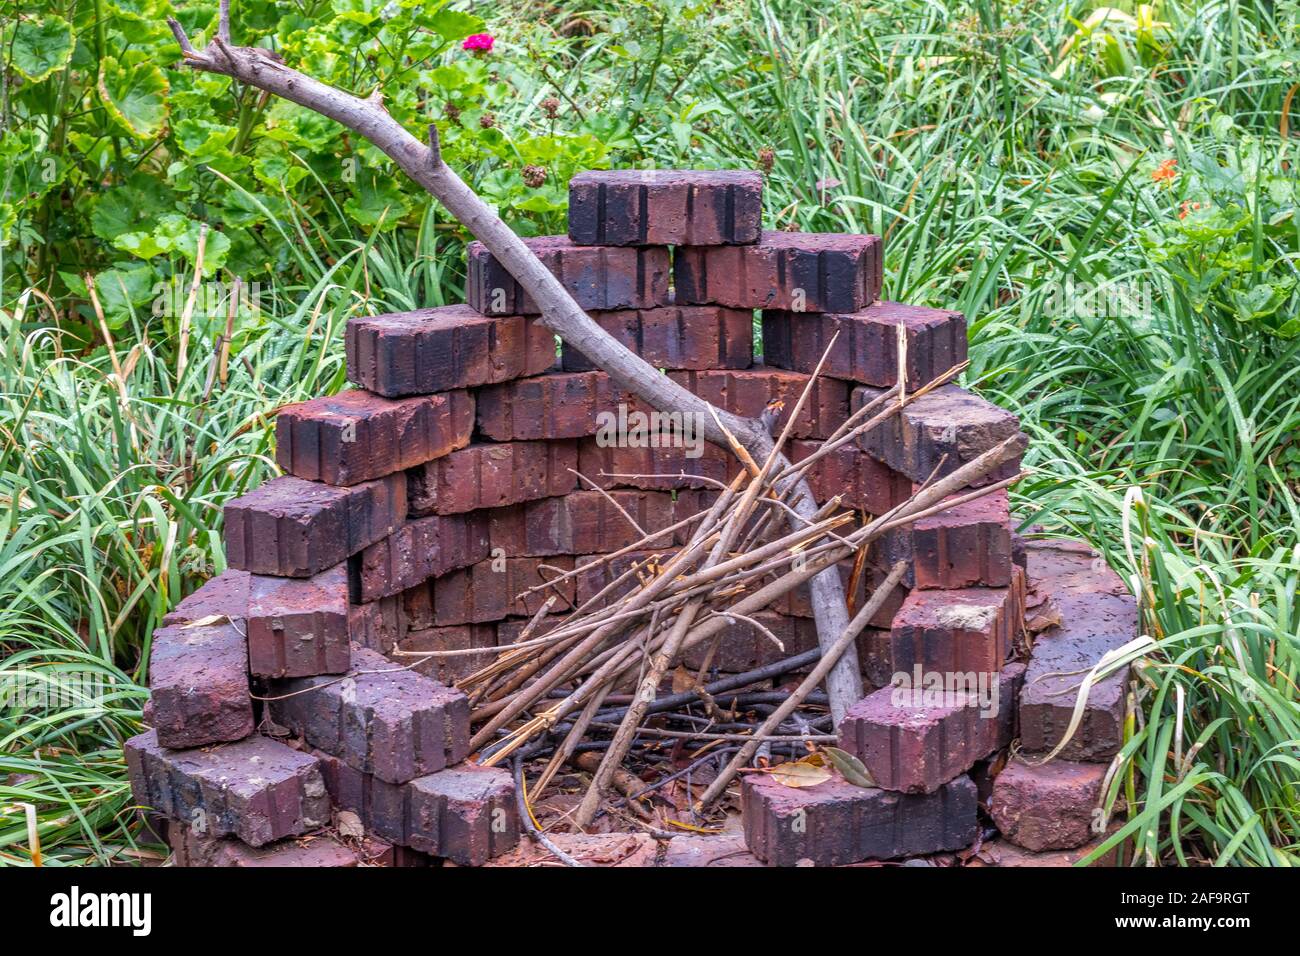 Eine kreisförmige Feuerstelle aus losen Ziegel gebaut gegen einen grünen  Garten Hintergrund Bild im Querformat isoliert Stockfotografie - Alamy